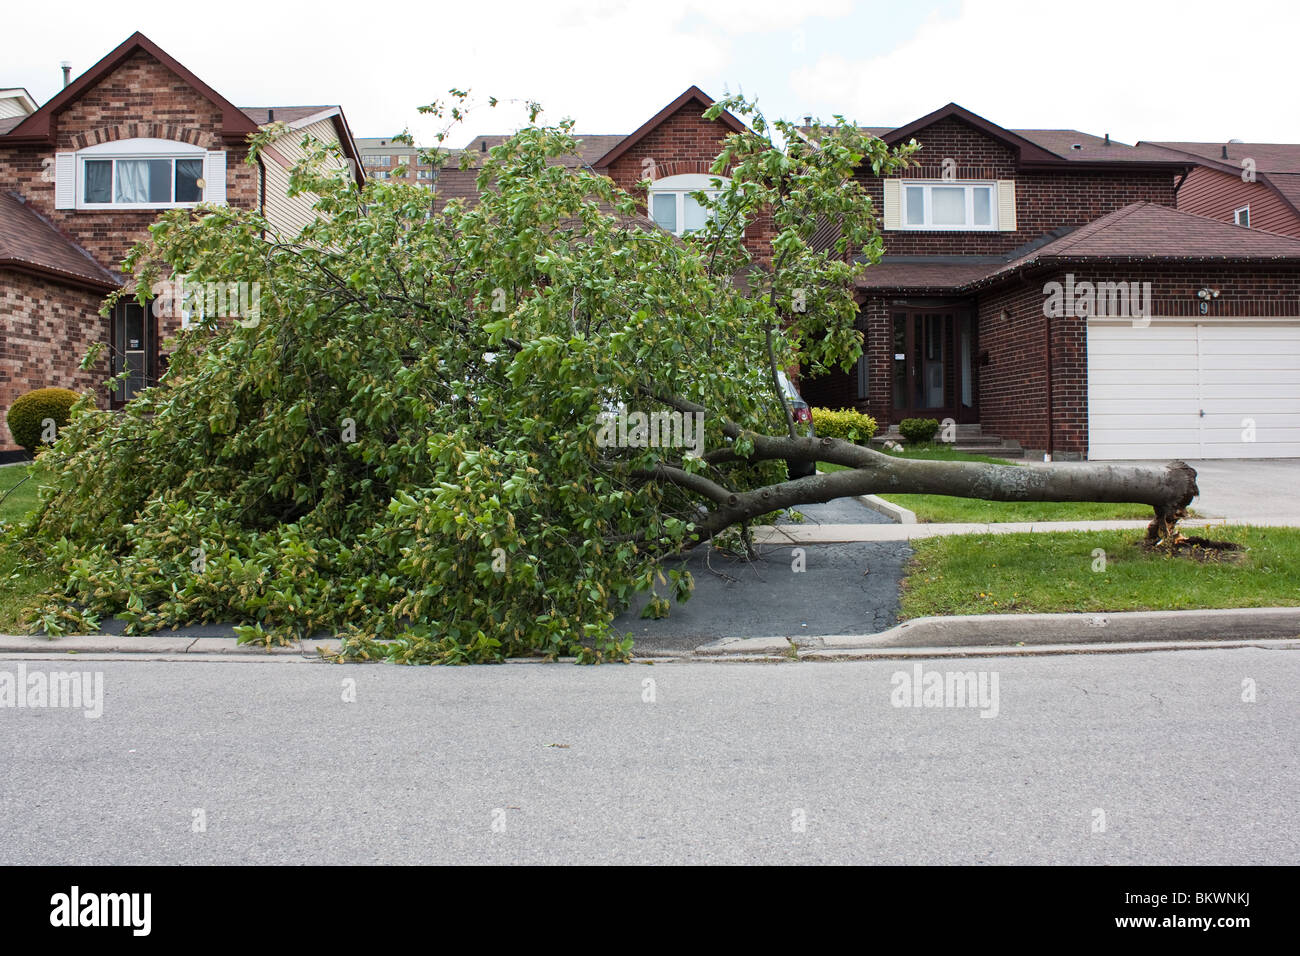 Tomber de l'arbre cassé dommage street house entrée danger Banque D'Images